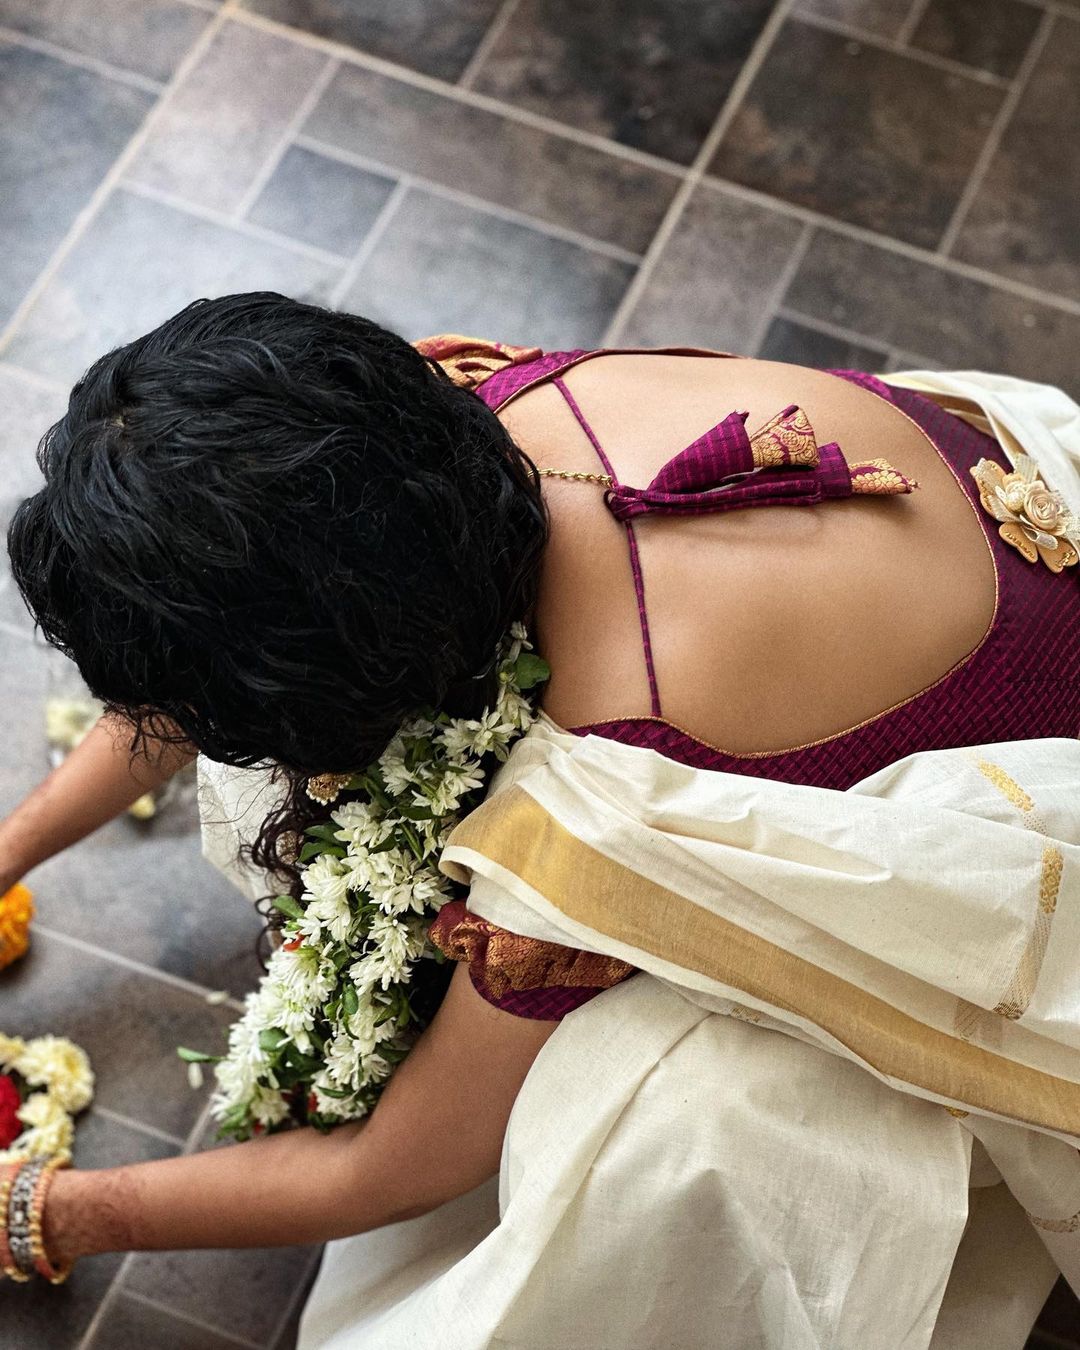 Actress Anupama Parameswaran onam celebration photos goes viral (6)